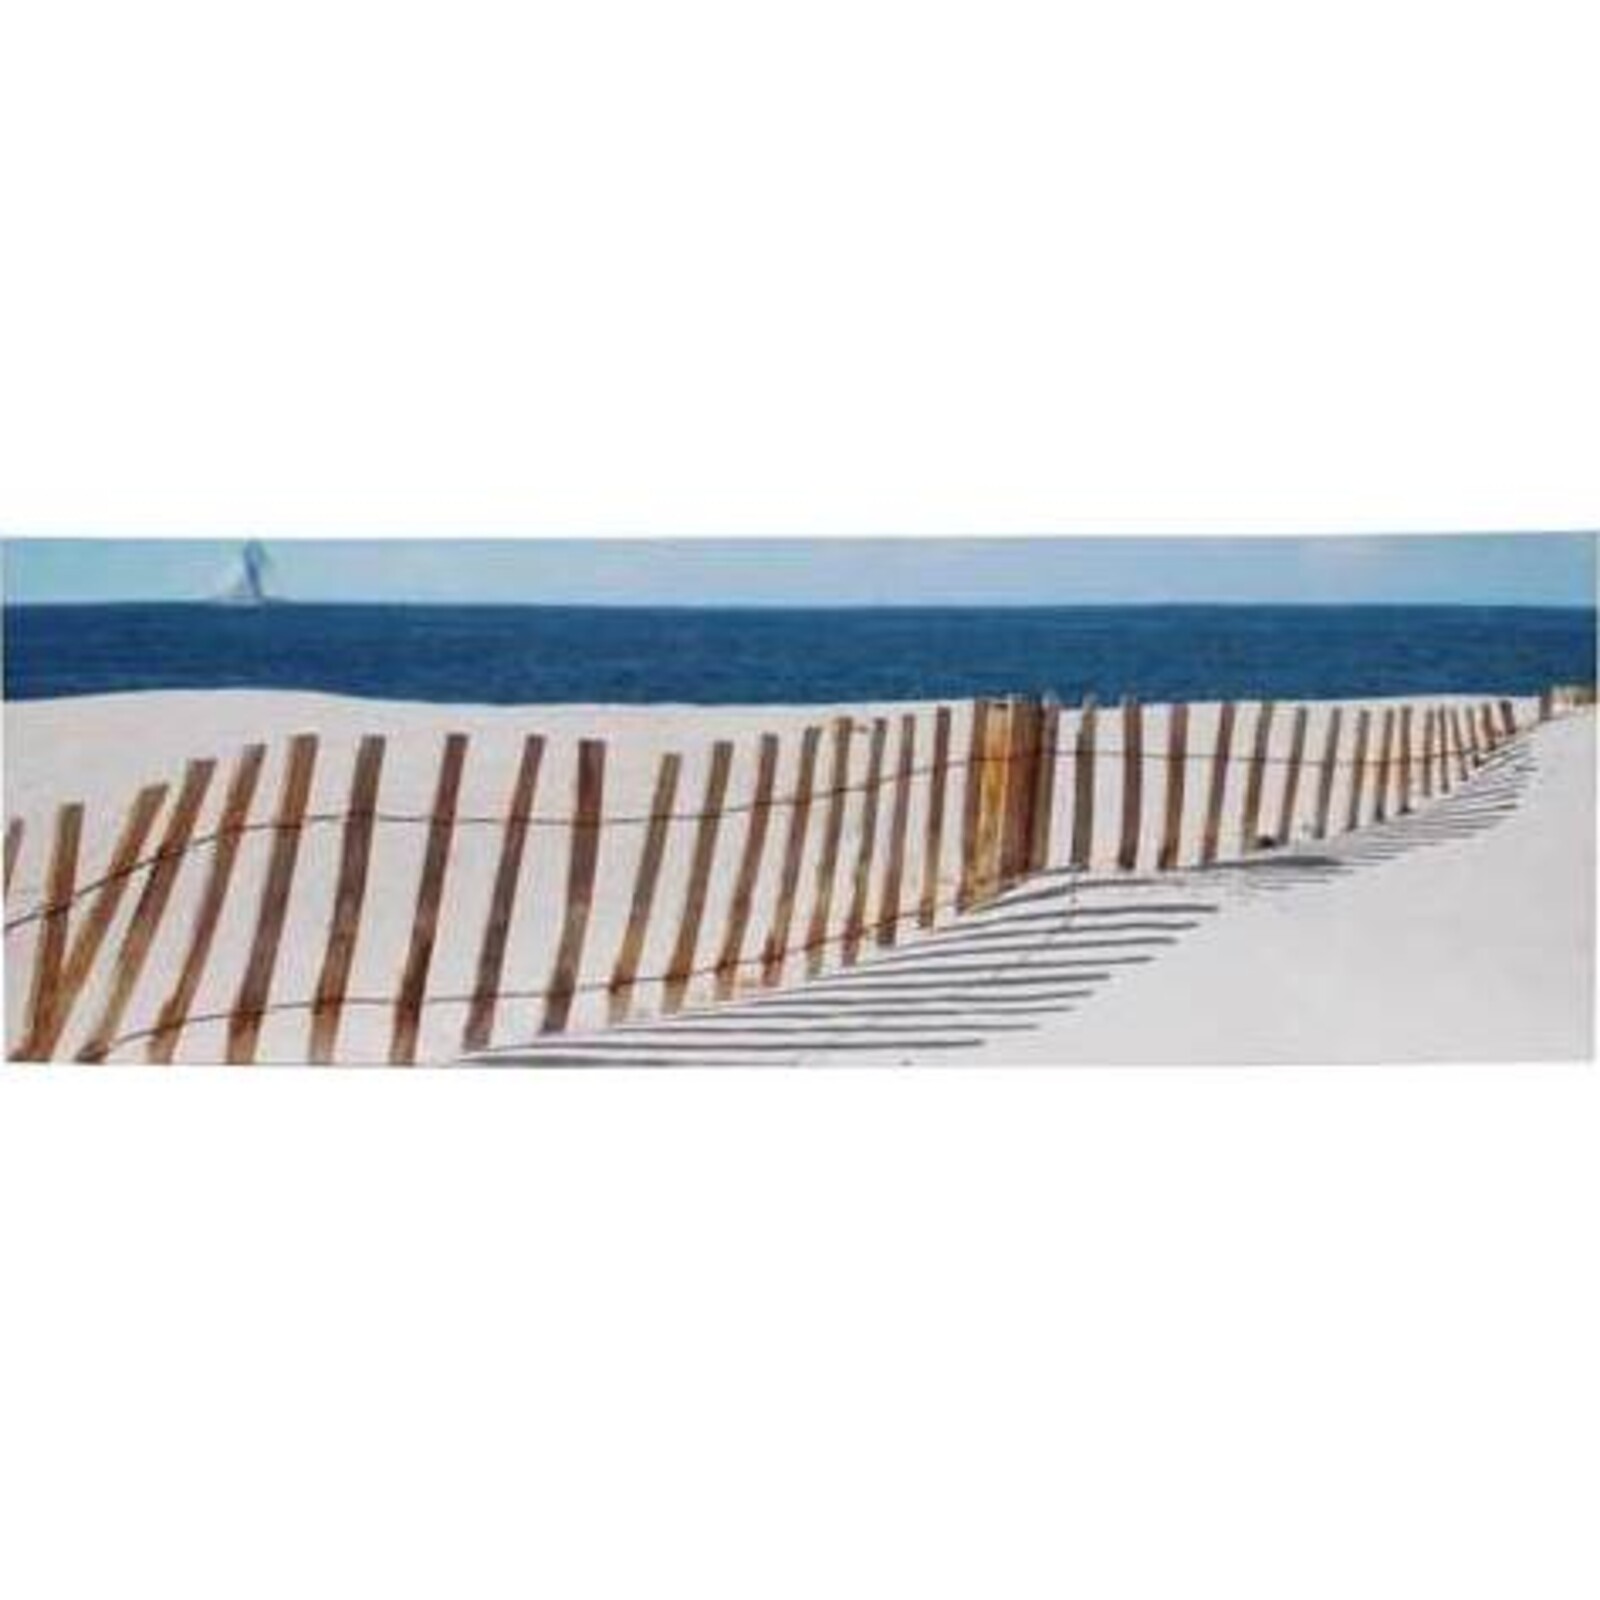 Canvas - Beach Fence Long